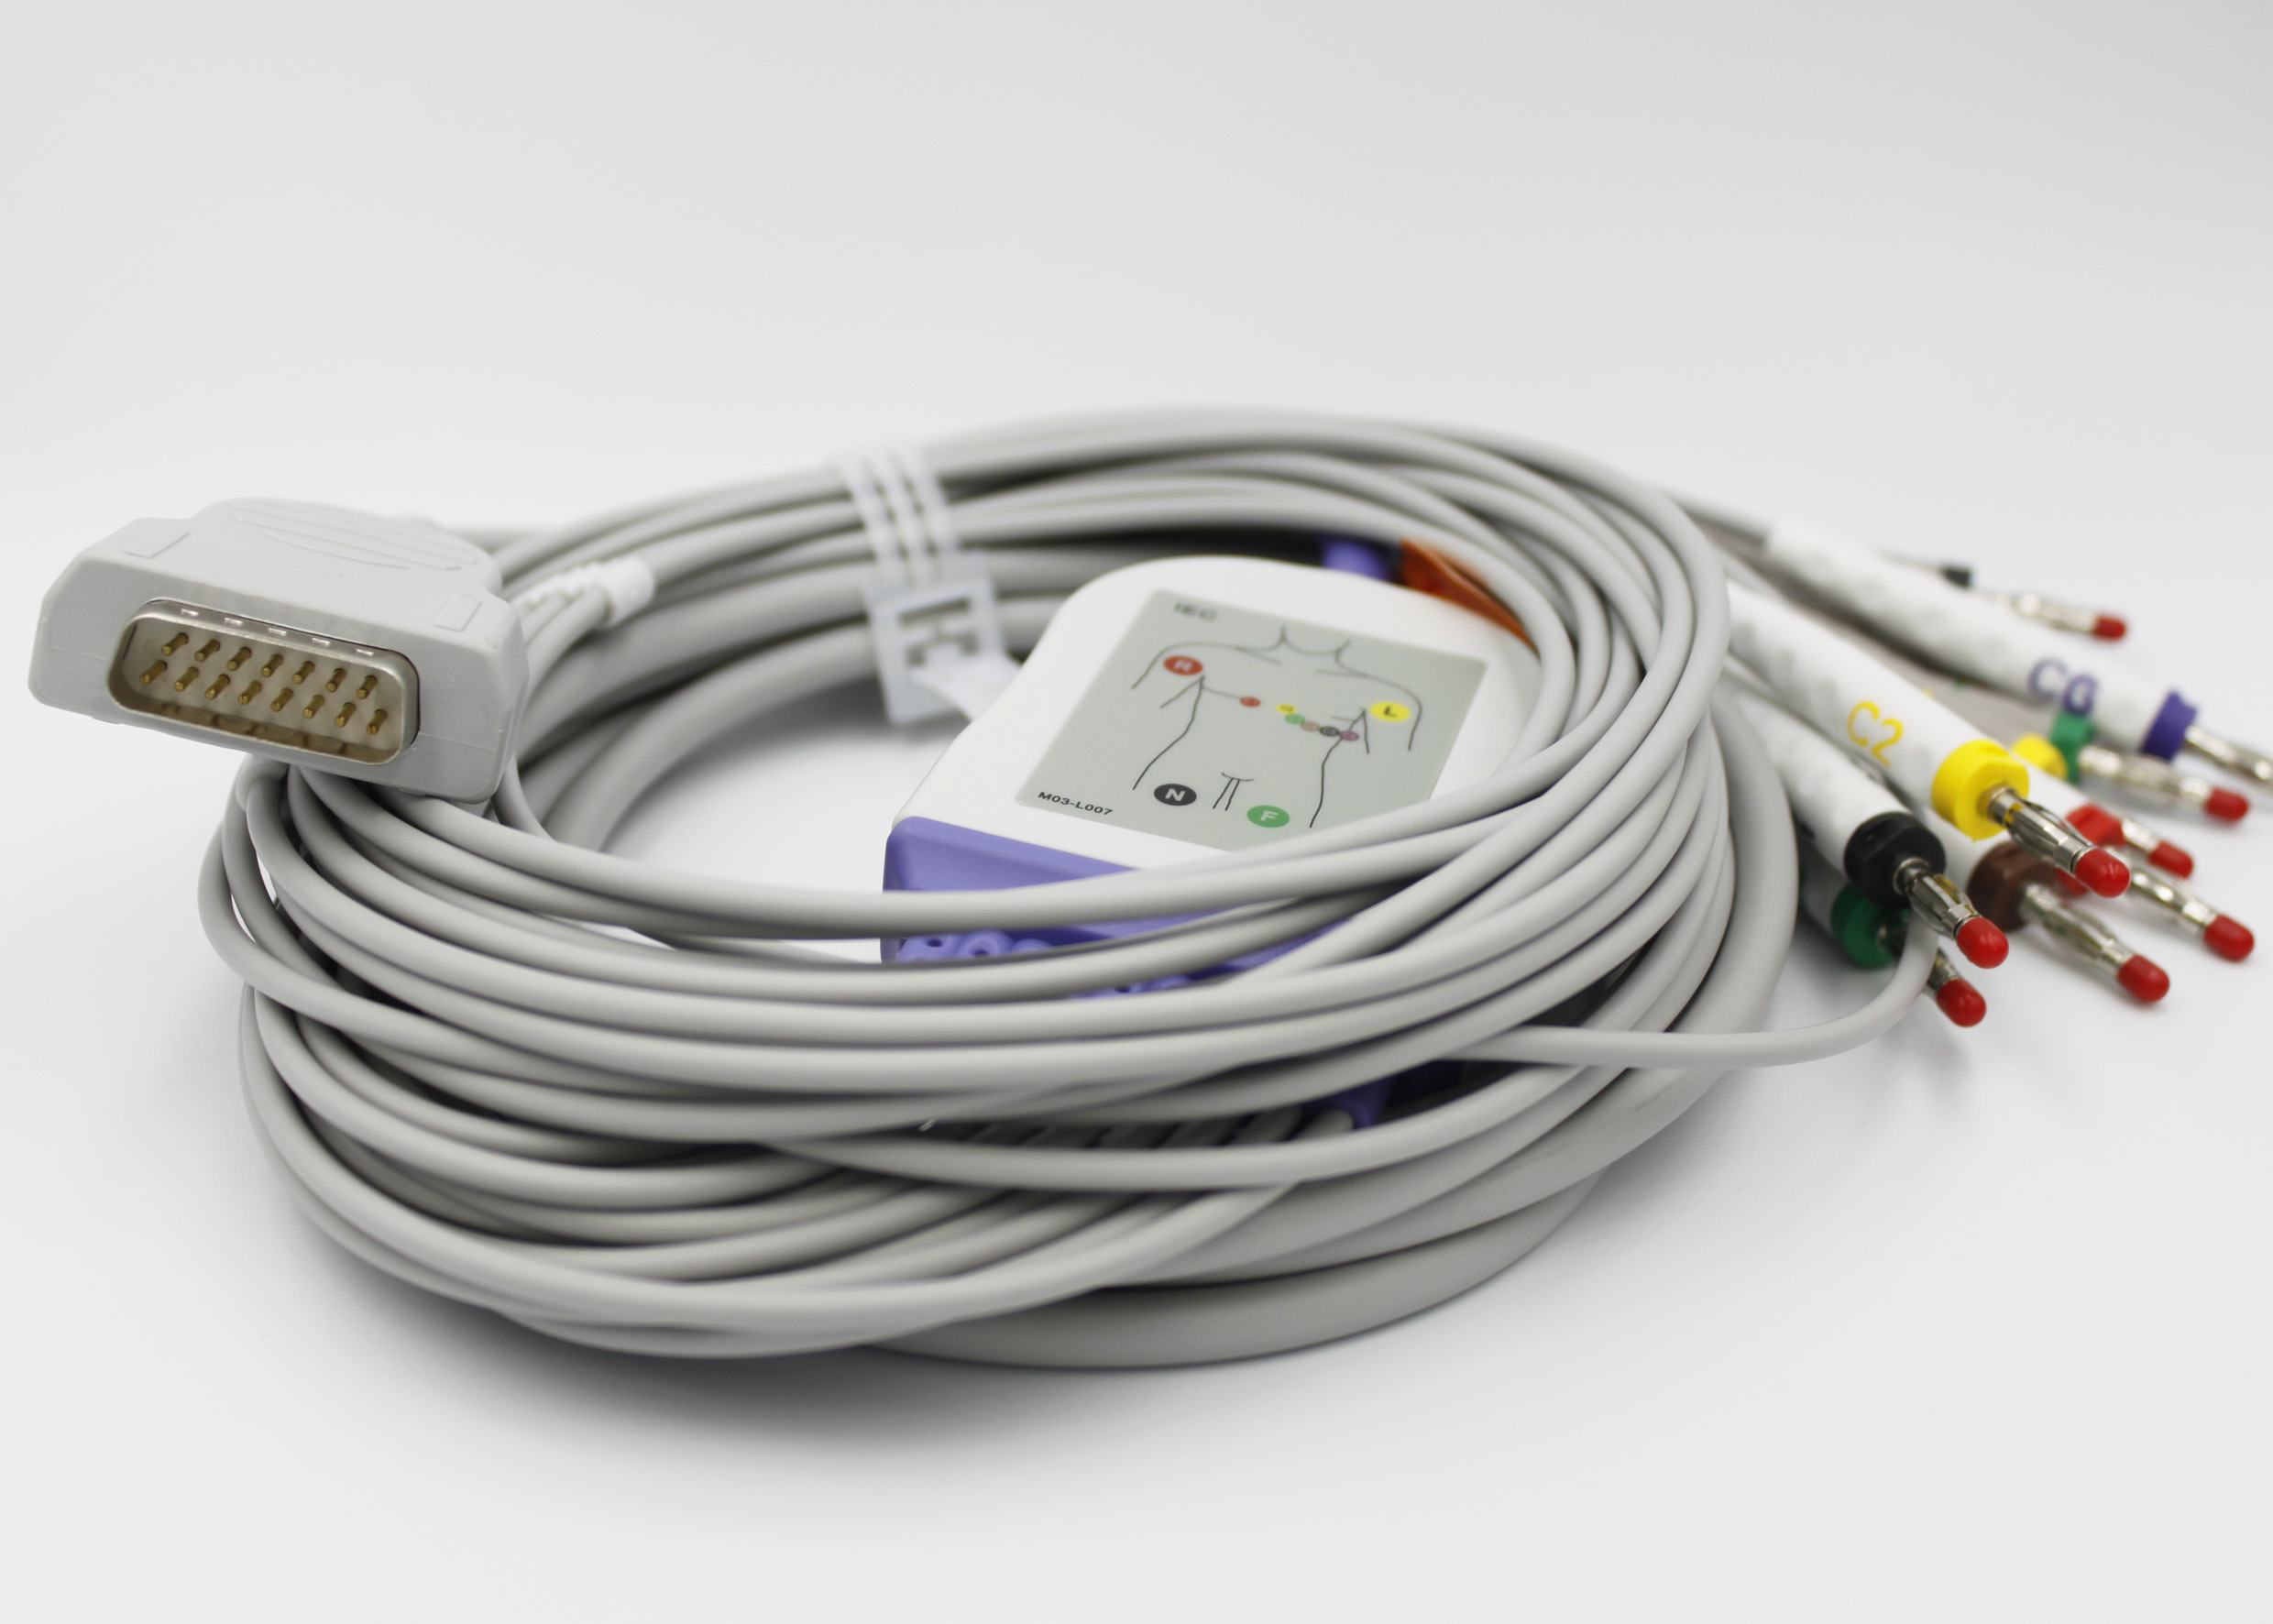 ЭКГ кабель пациента с интегрированными отведениями для HELLIGE Cardio Test EK51 (1991 г.в.), MicroSmart МАС-500, MAC-600, MAC-800, MAC-1200, MAC-1600, разъём DA-15, штекер 4 мм.